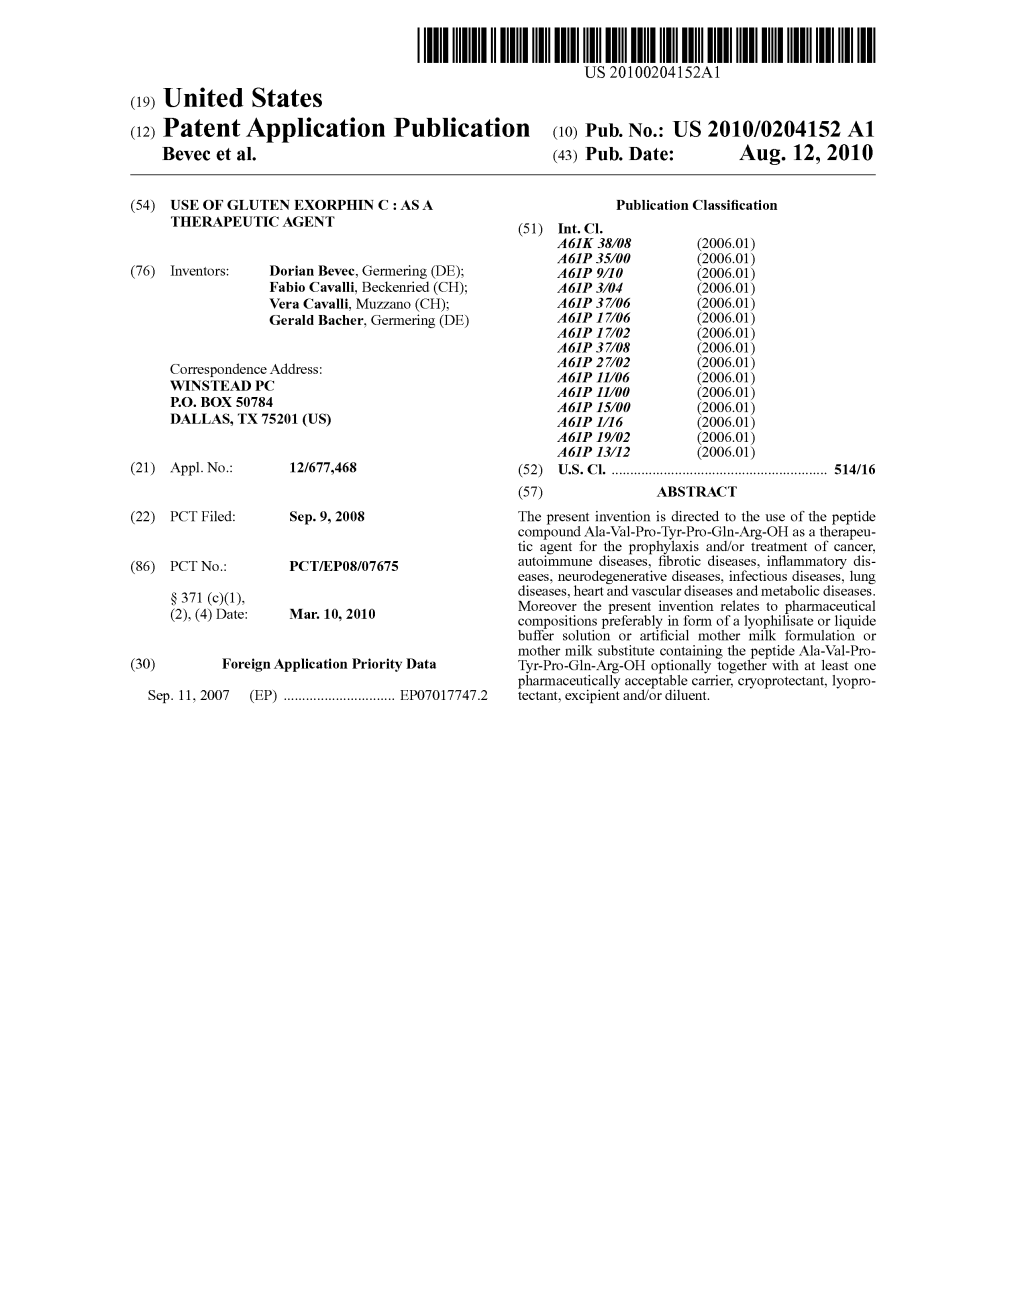 (12) Patent Application Publication (10) Pub. No.: US 2010/0204152 A1 Bevec Et Al